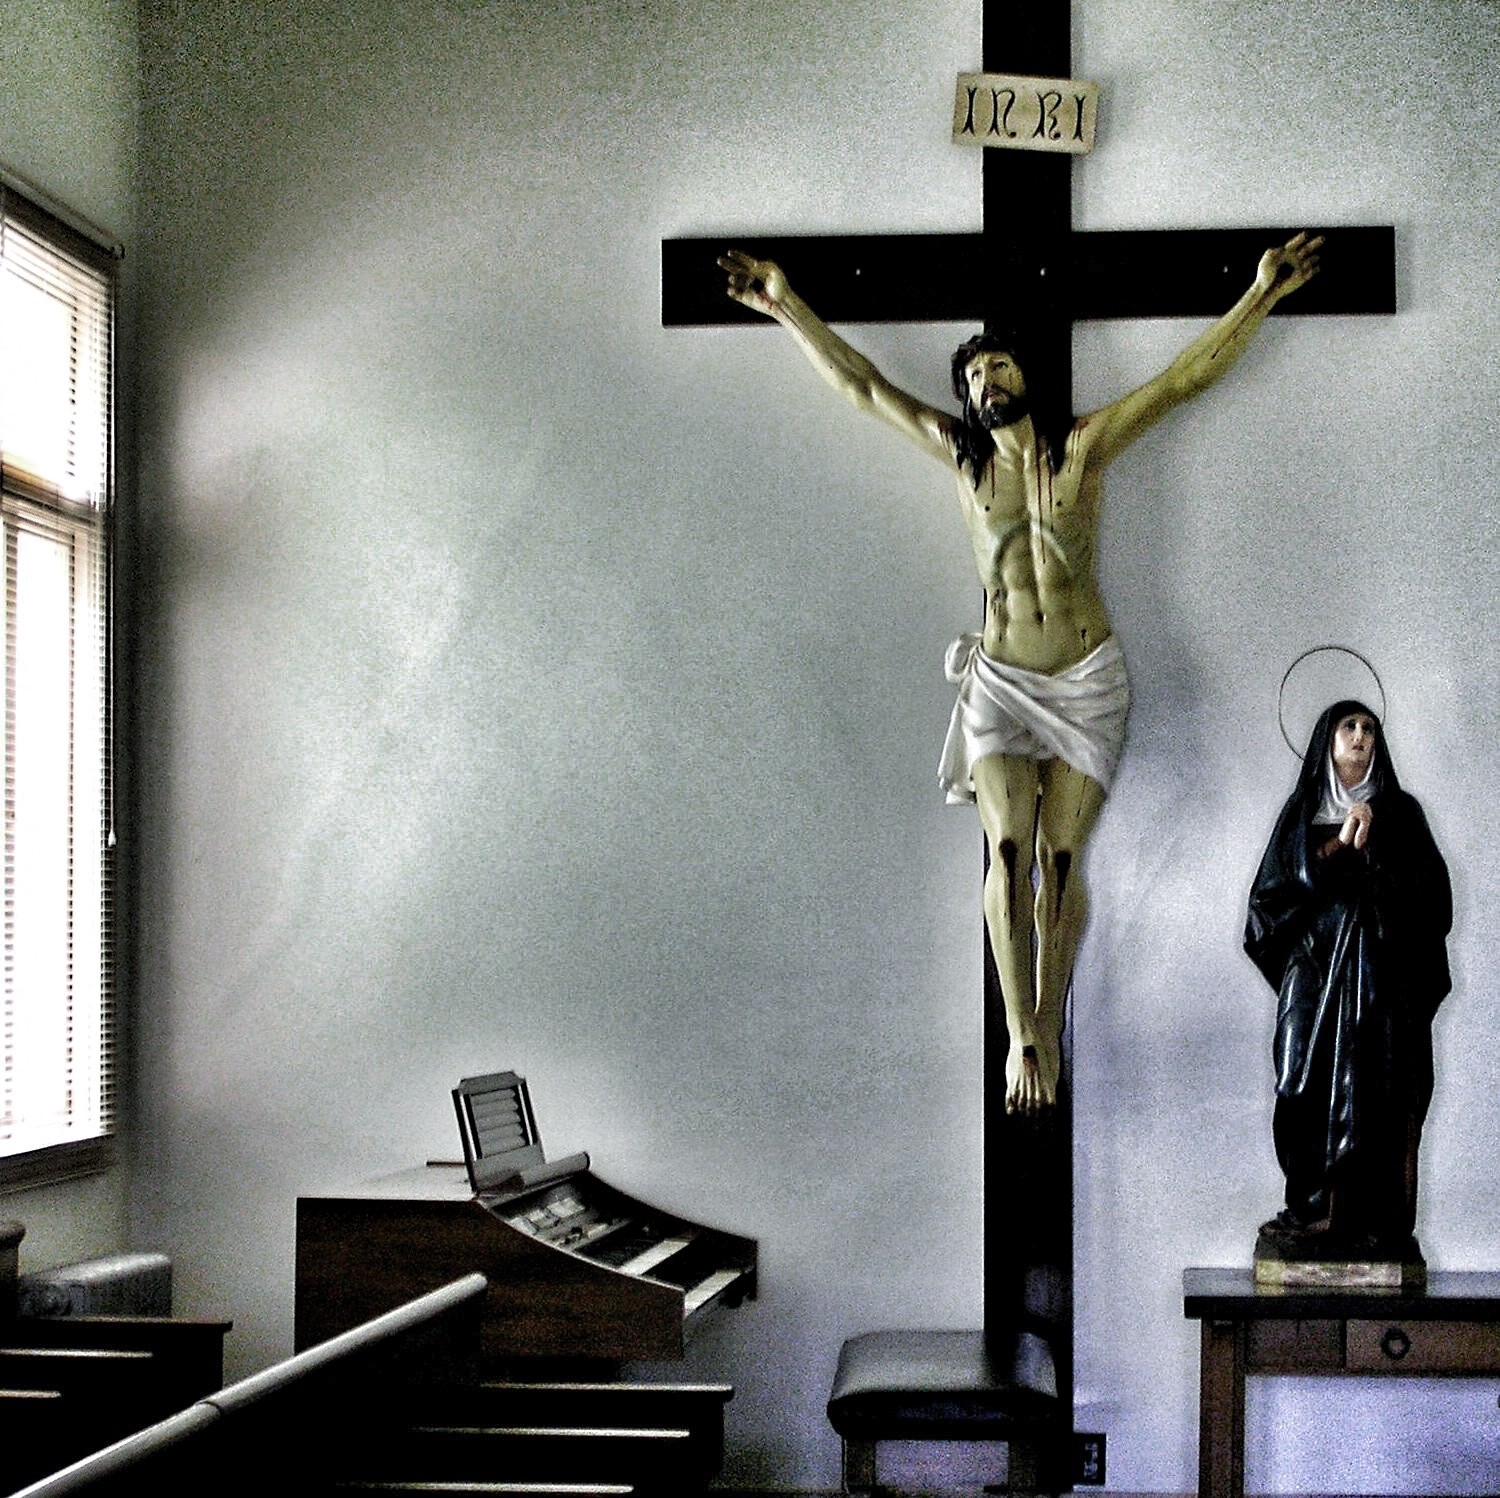 Crucifix in a monastery